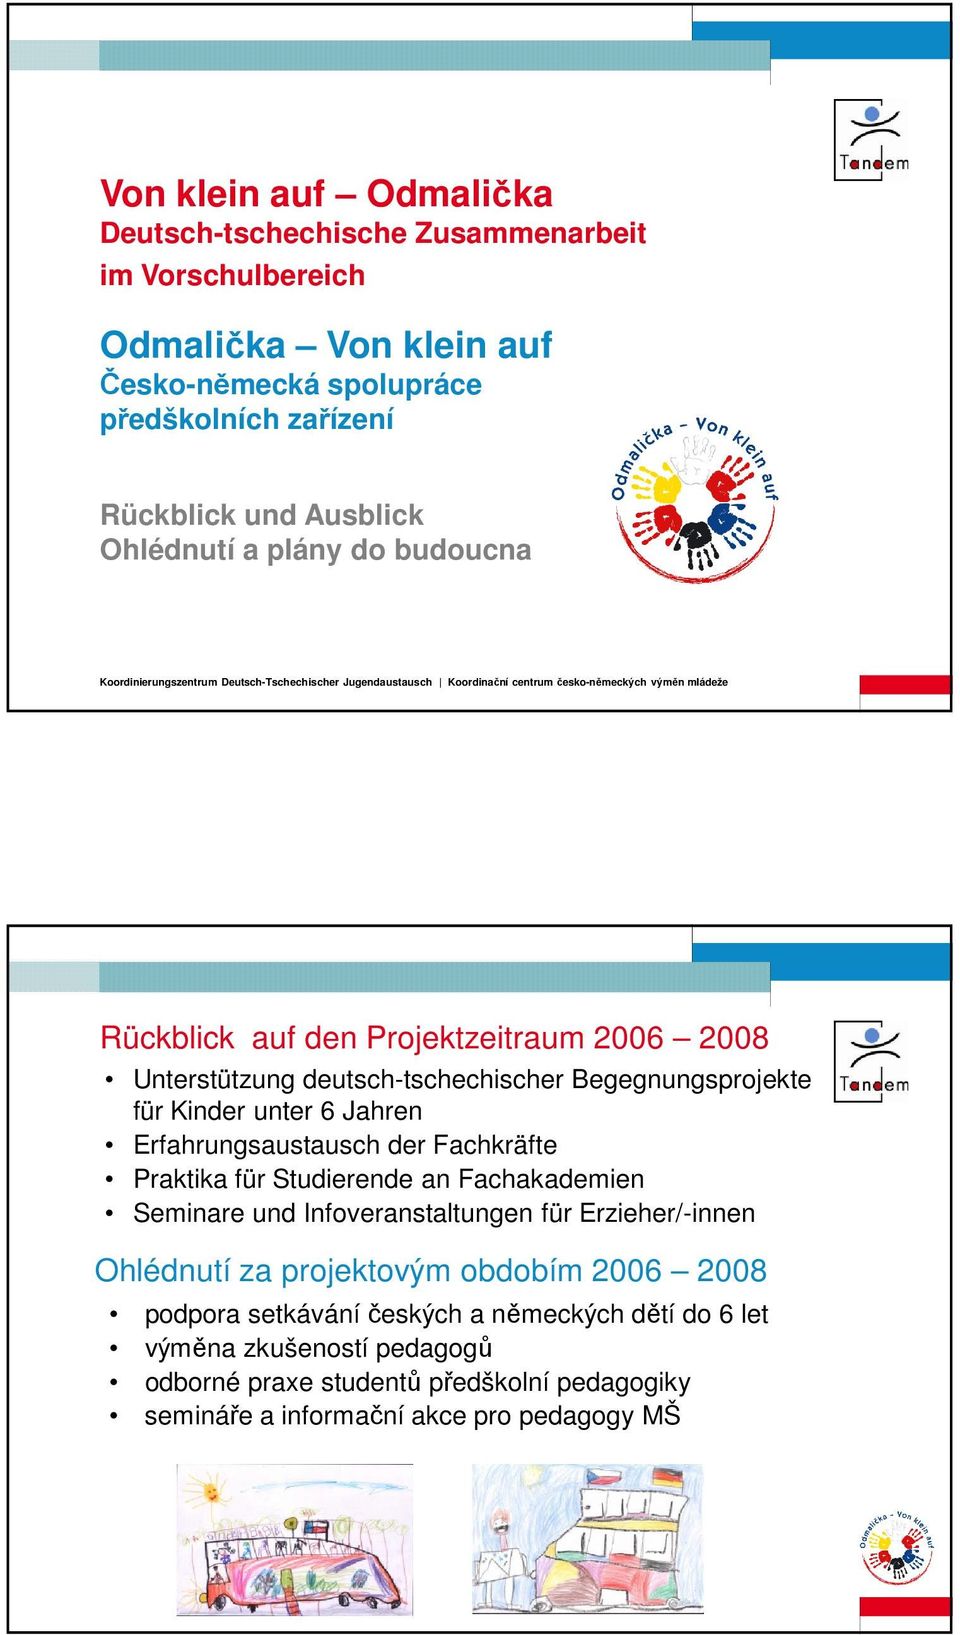 deutsch-tschechischer Begegnungsprojekte für Kinder unter 6 Jahren Erfahrungsaustausch der Fachkräfte Praktika für Studierende an Fachakademien Seminare und Infoveranstaltungen für